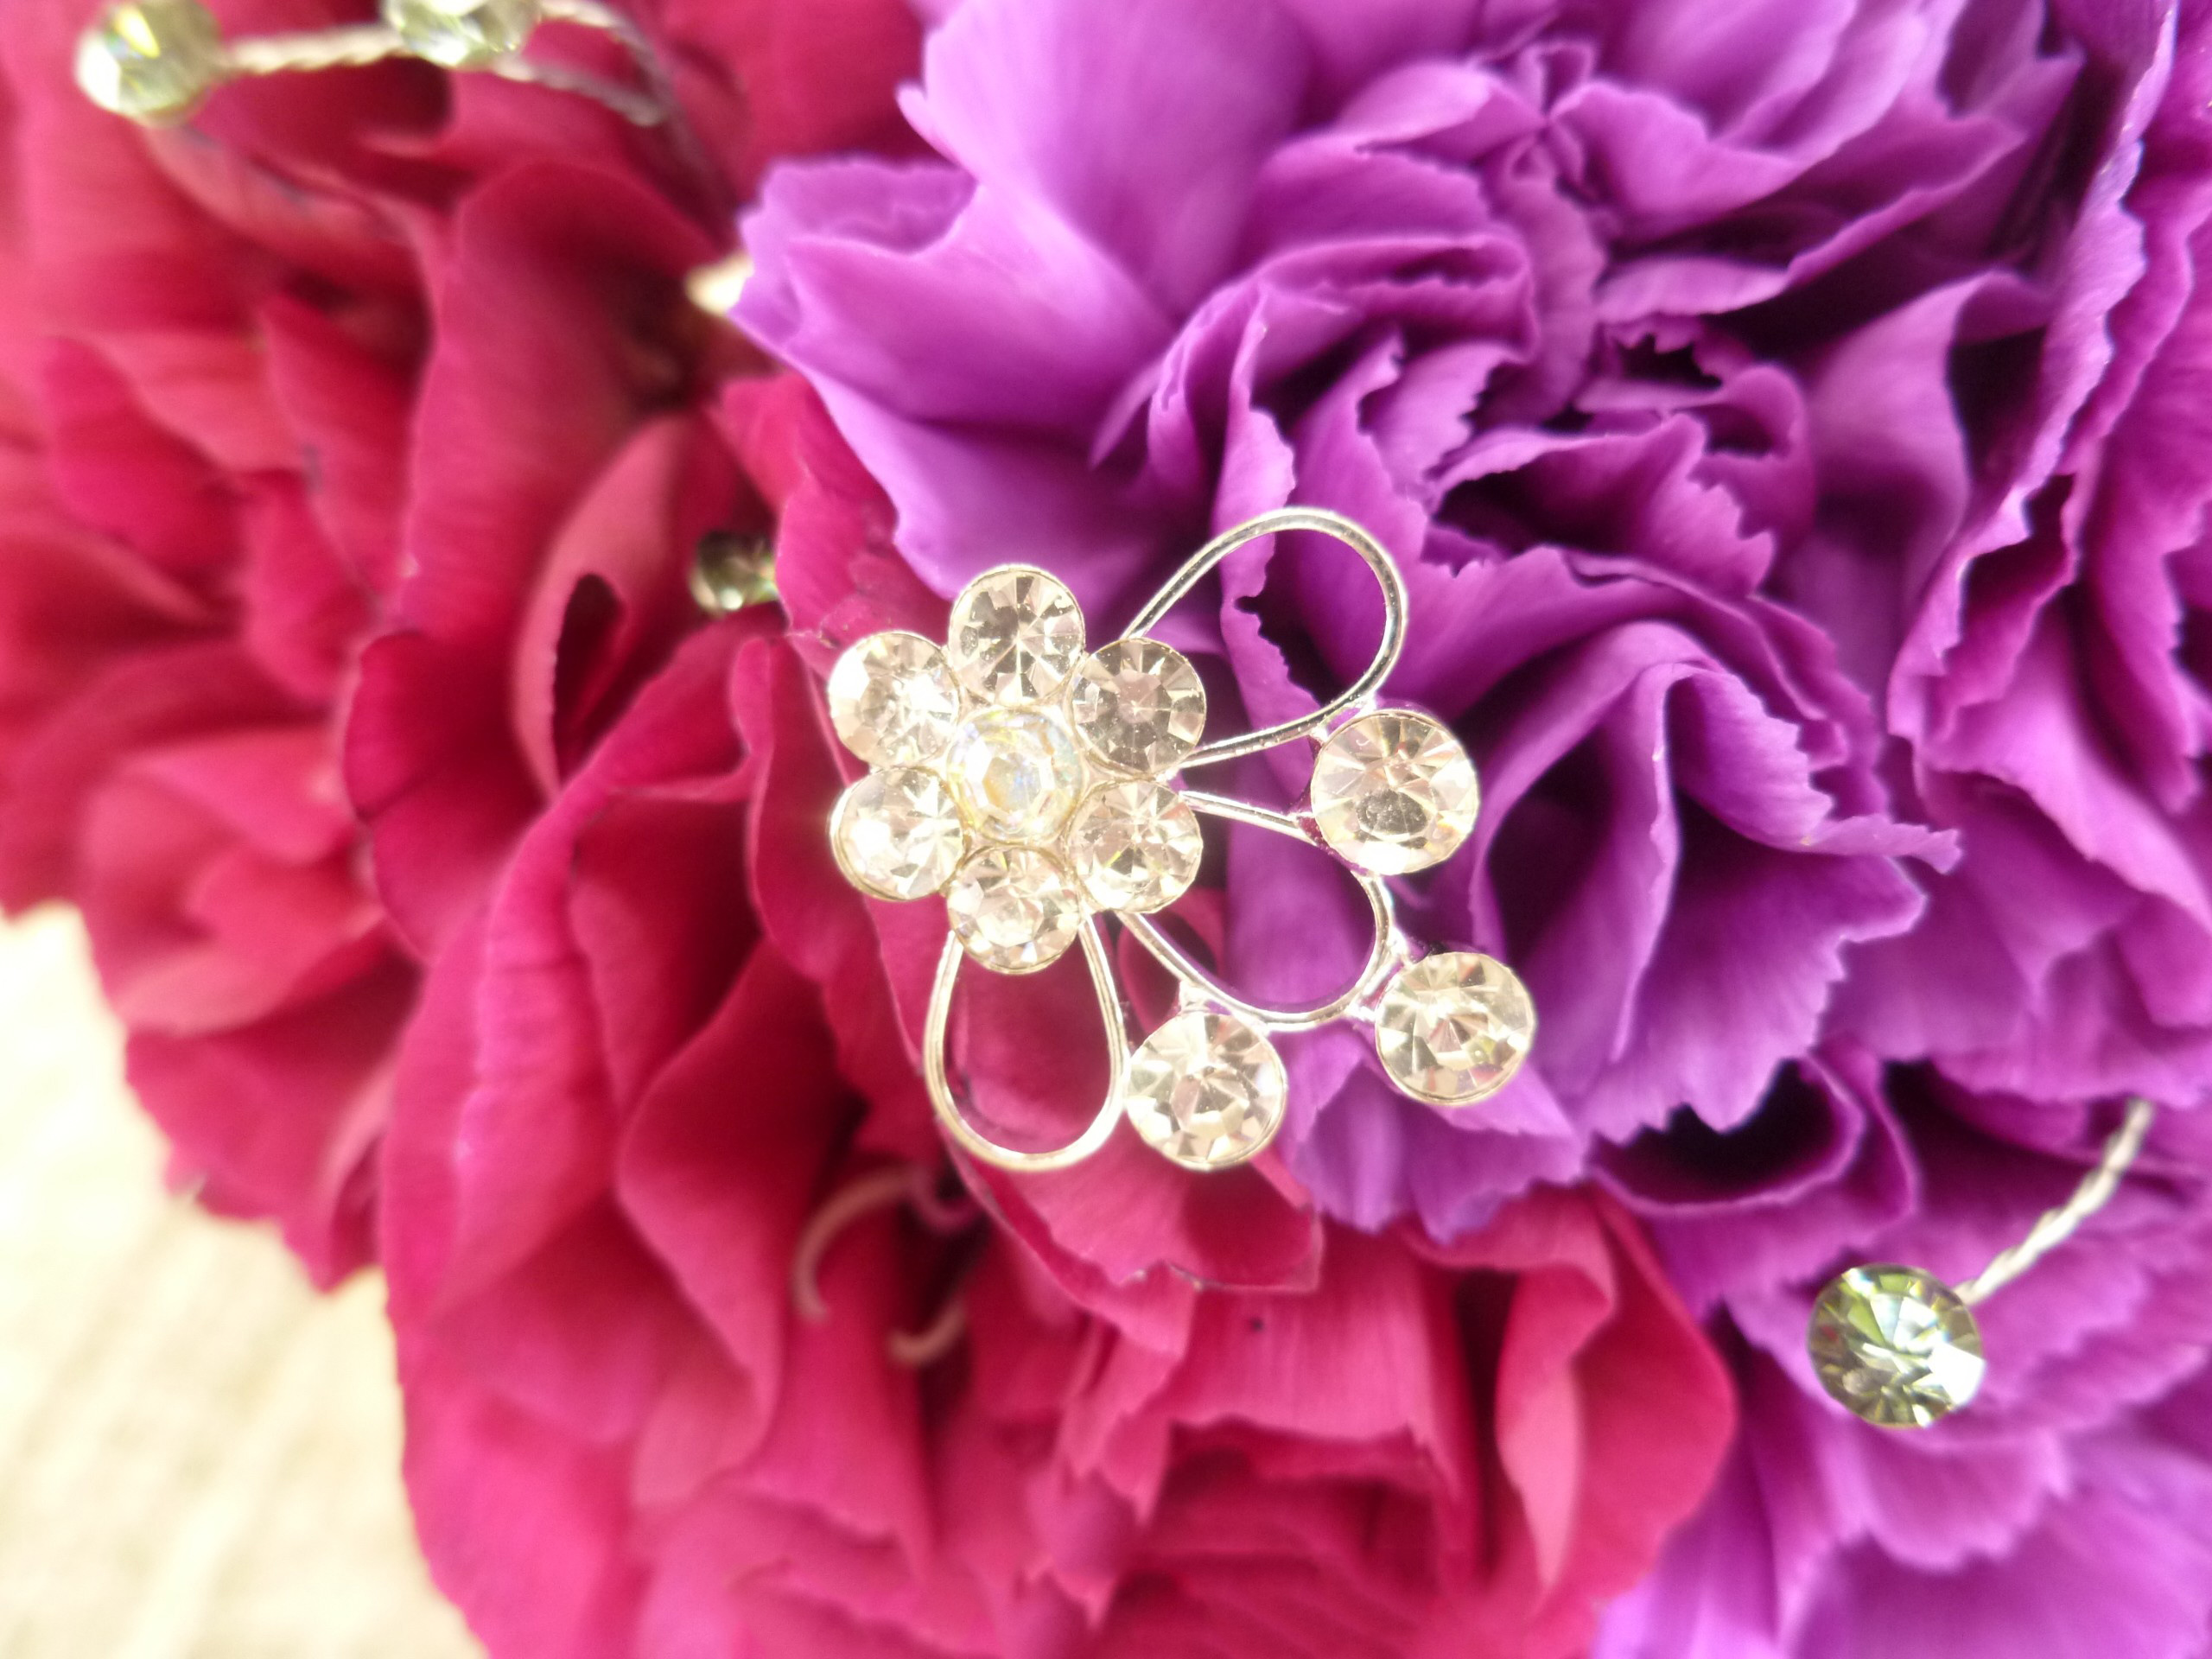 Tổng hợp hình ảnh hoa cẩm chướng tím đẹp nhất - [Kích thước hình ảnh: 2560x1920 px]